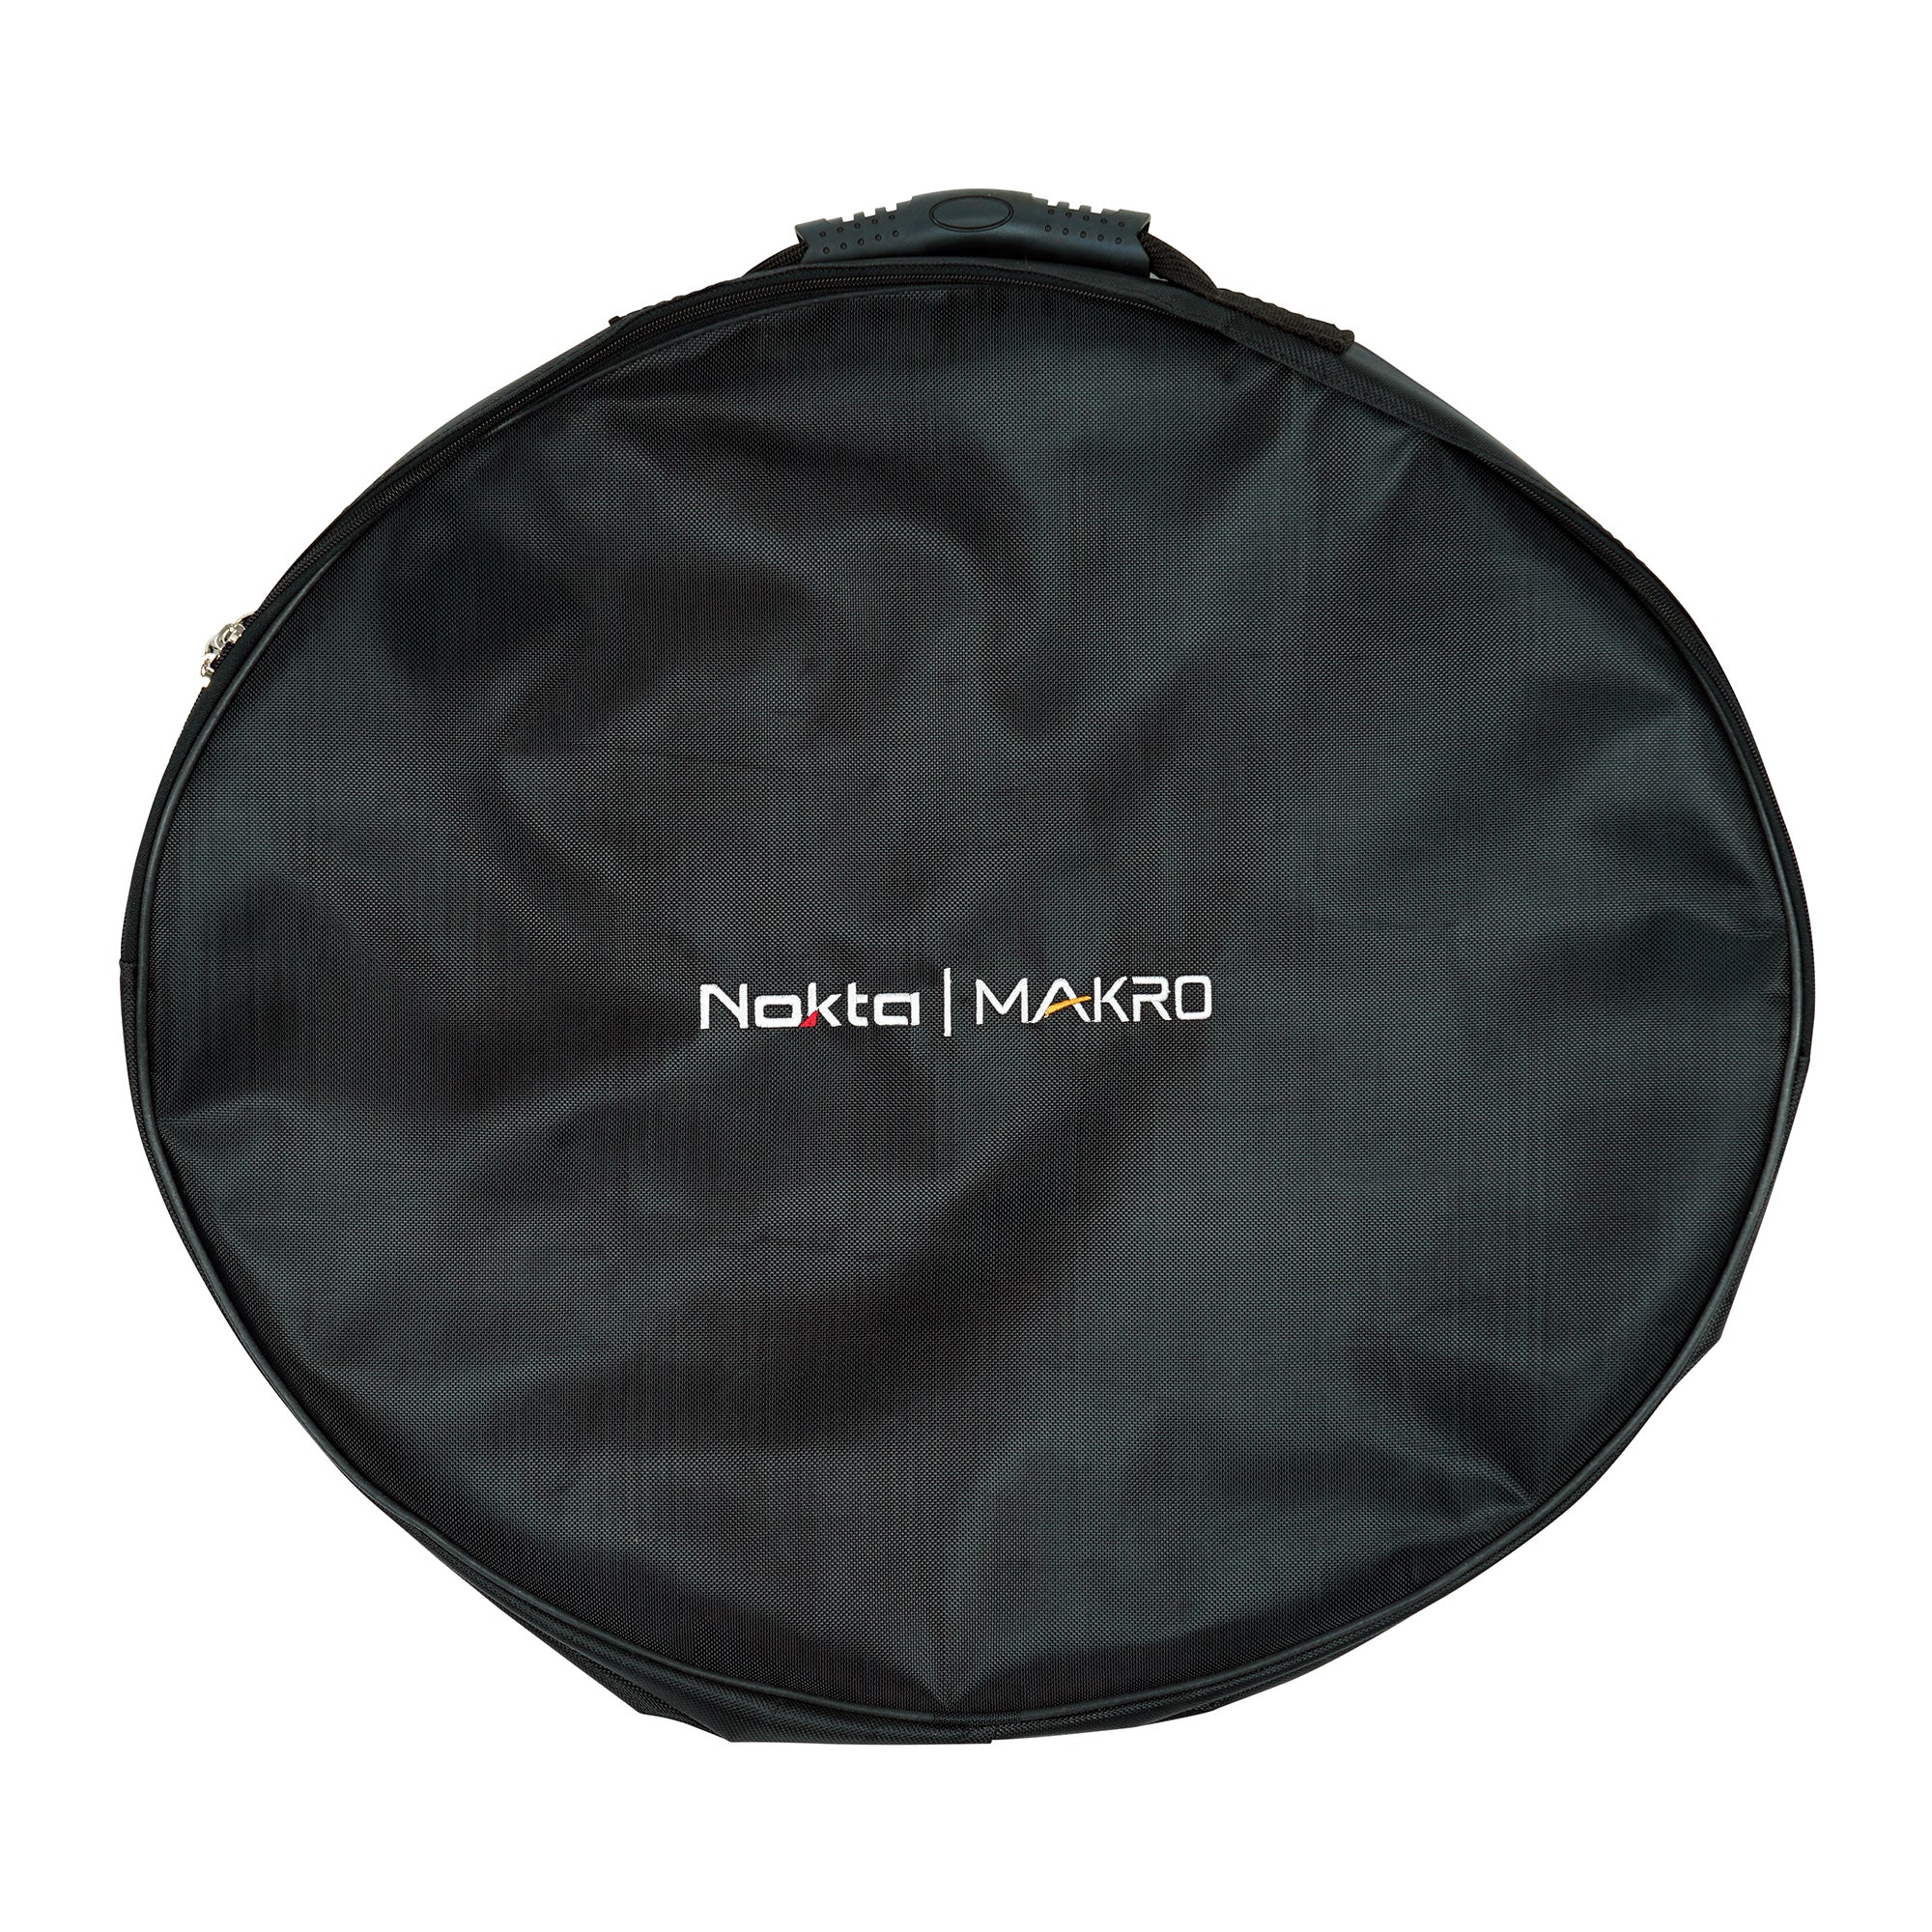 Nokta Makro Carrying Bag for INV56 Invenio and Invenio Pro Search Coil